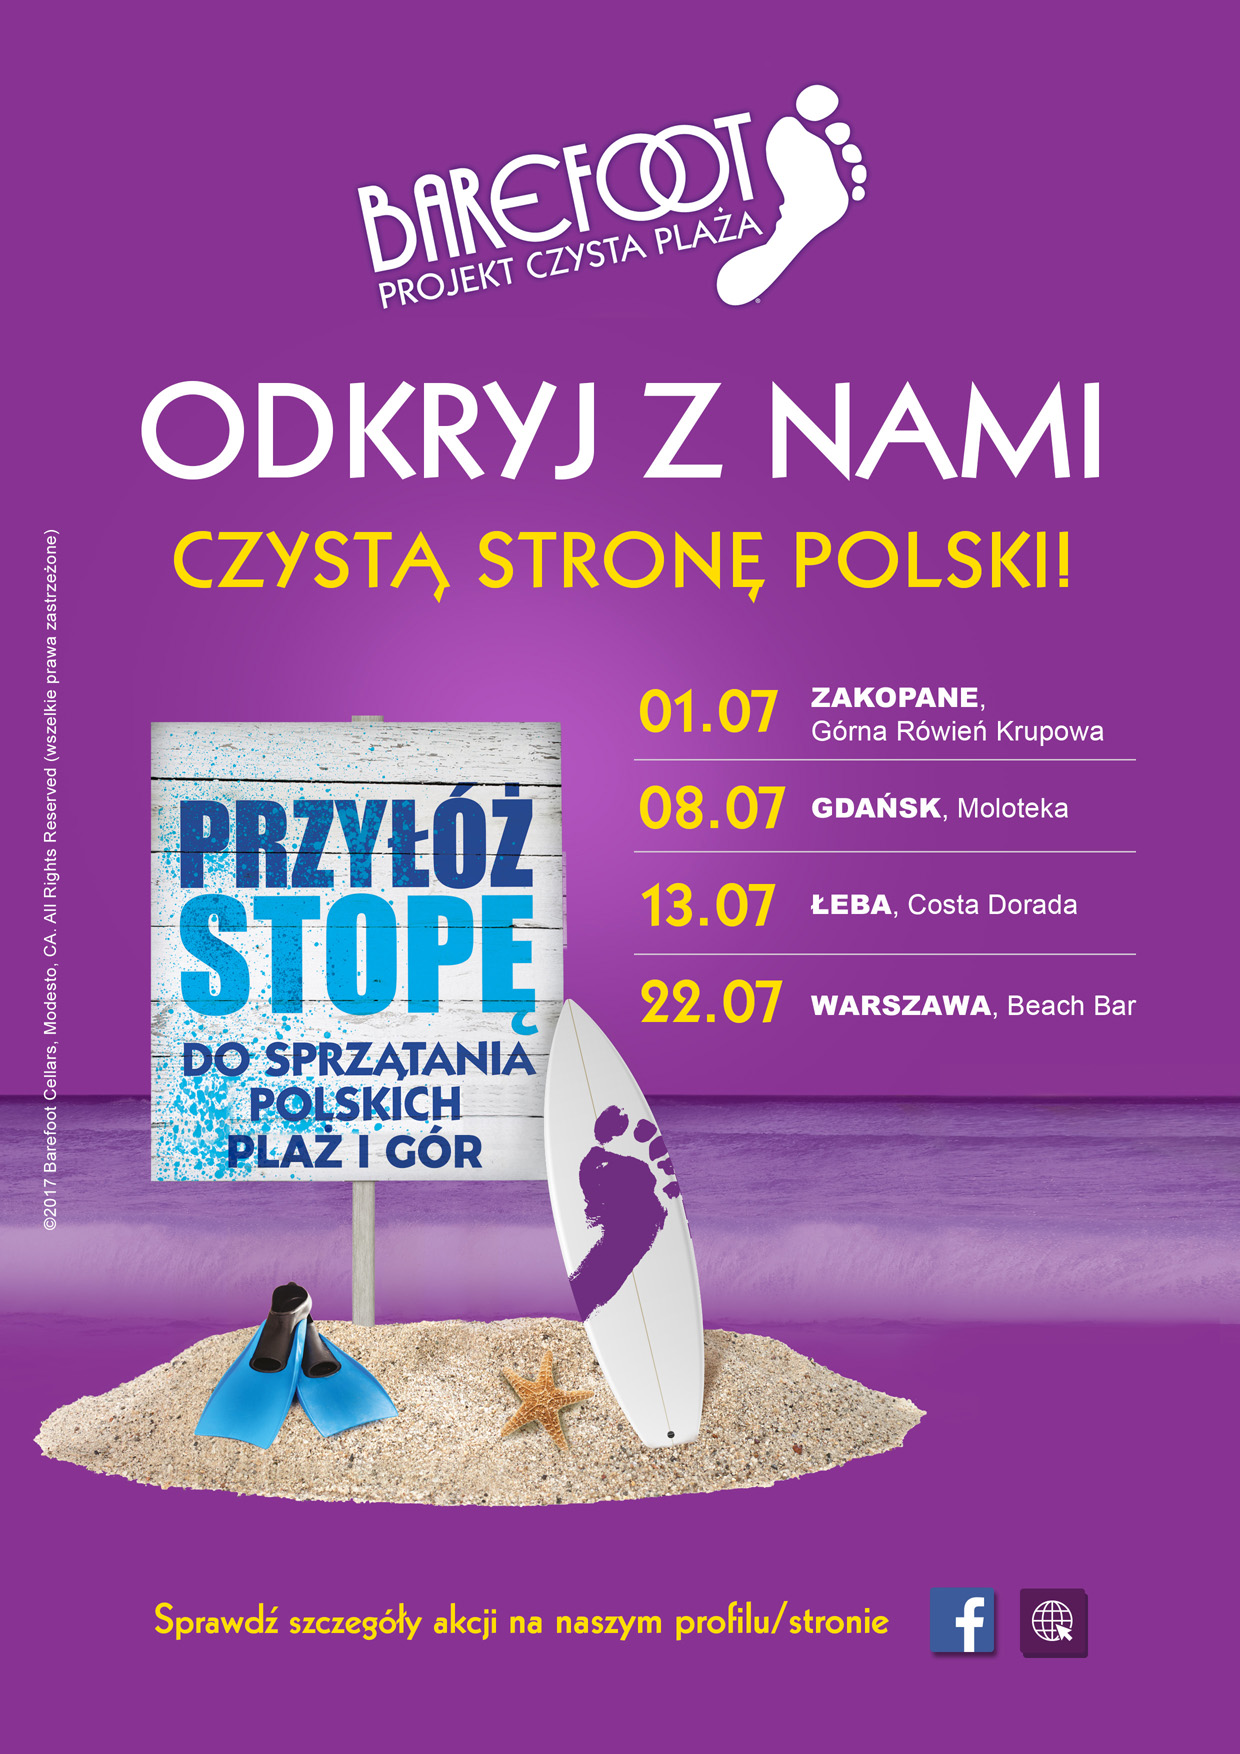 Pozostaw tylko ślady bosych stóp! 1 lipca rozpocznie się cykl akcji wielkiego sprzątania Polski – od Tatr aż po Bałtyk